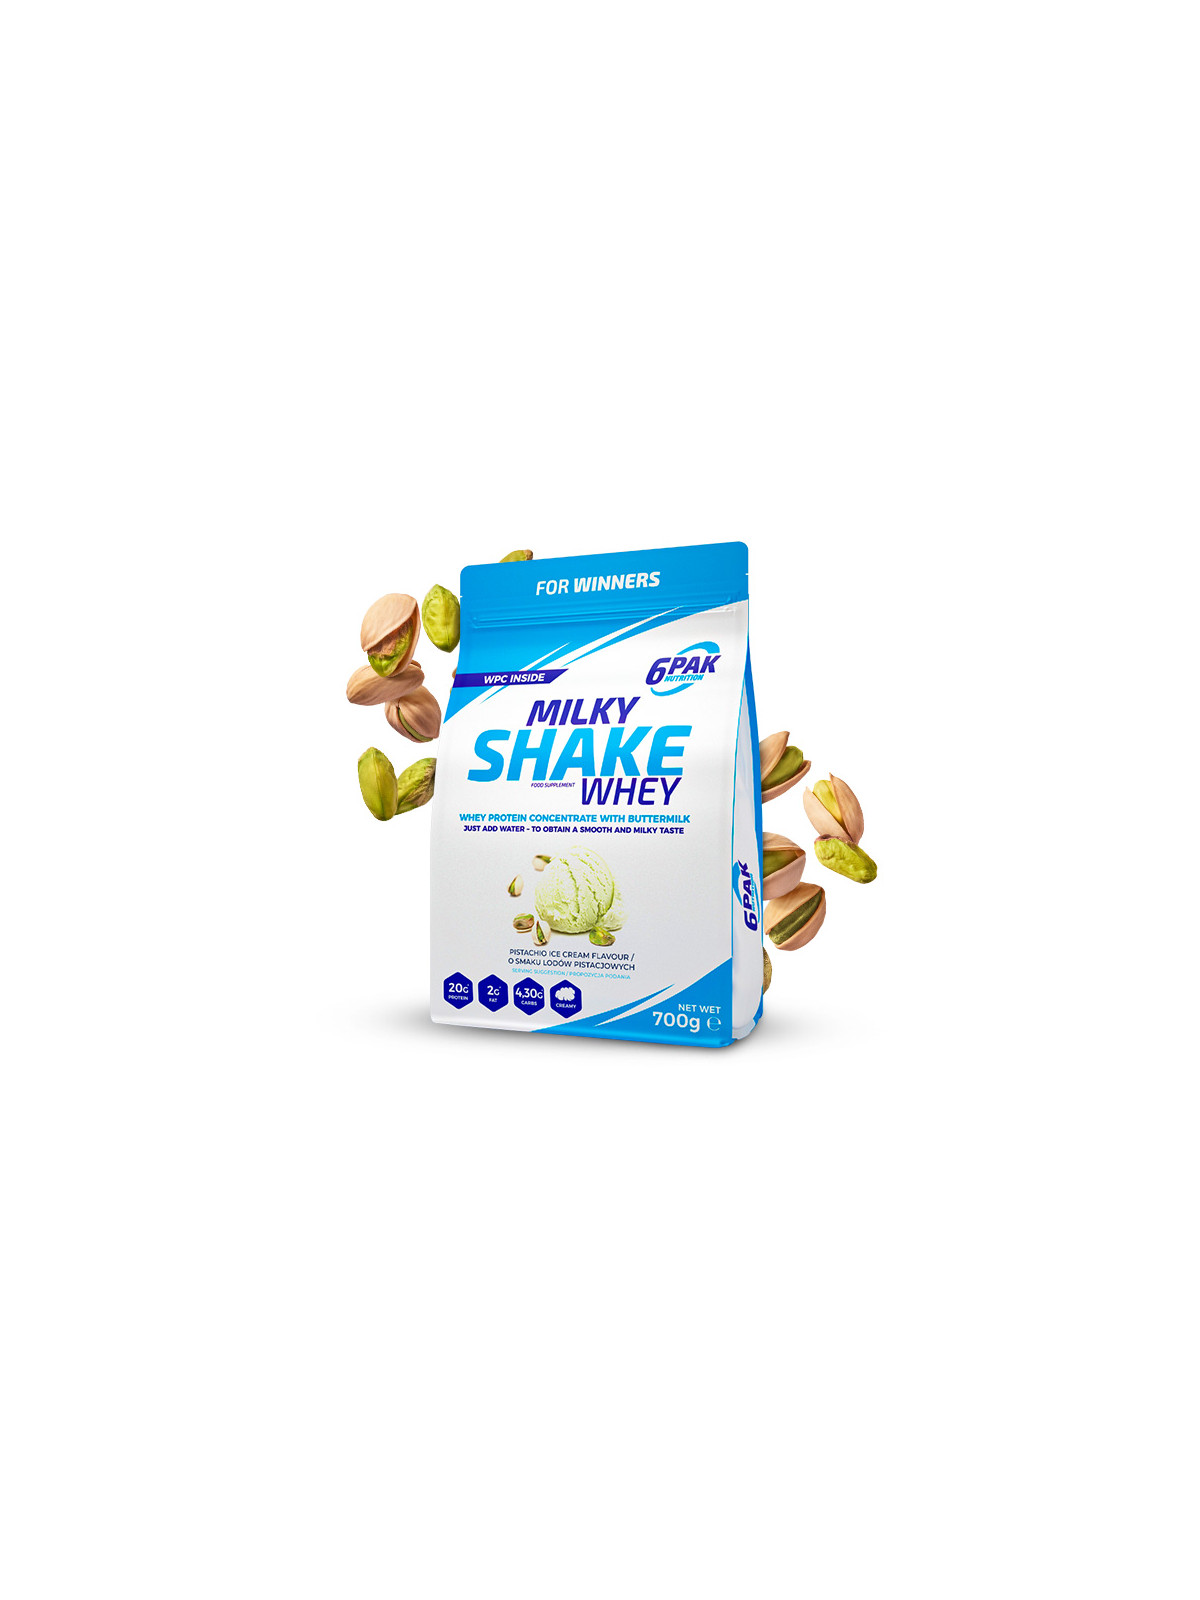 Odżywka białkowa Milky Shake Whey - 700g - Pistachio Ice Cream